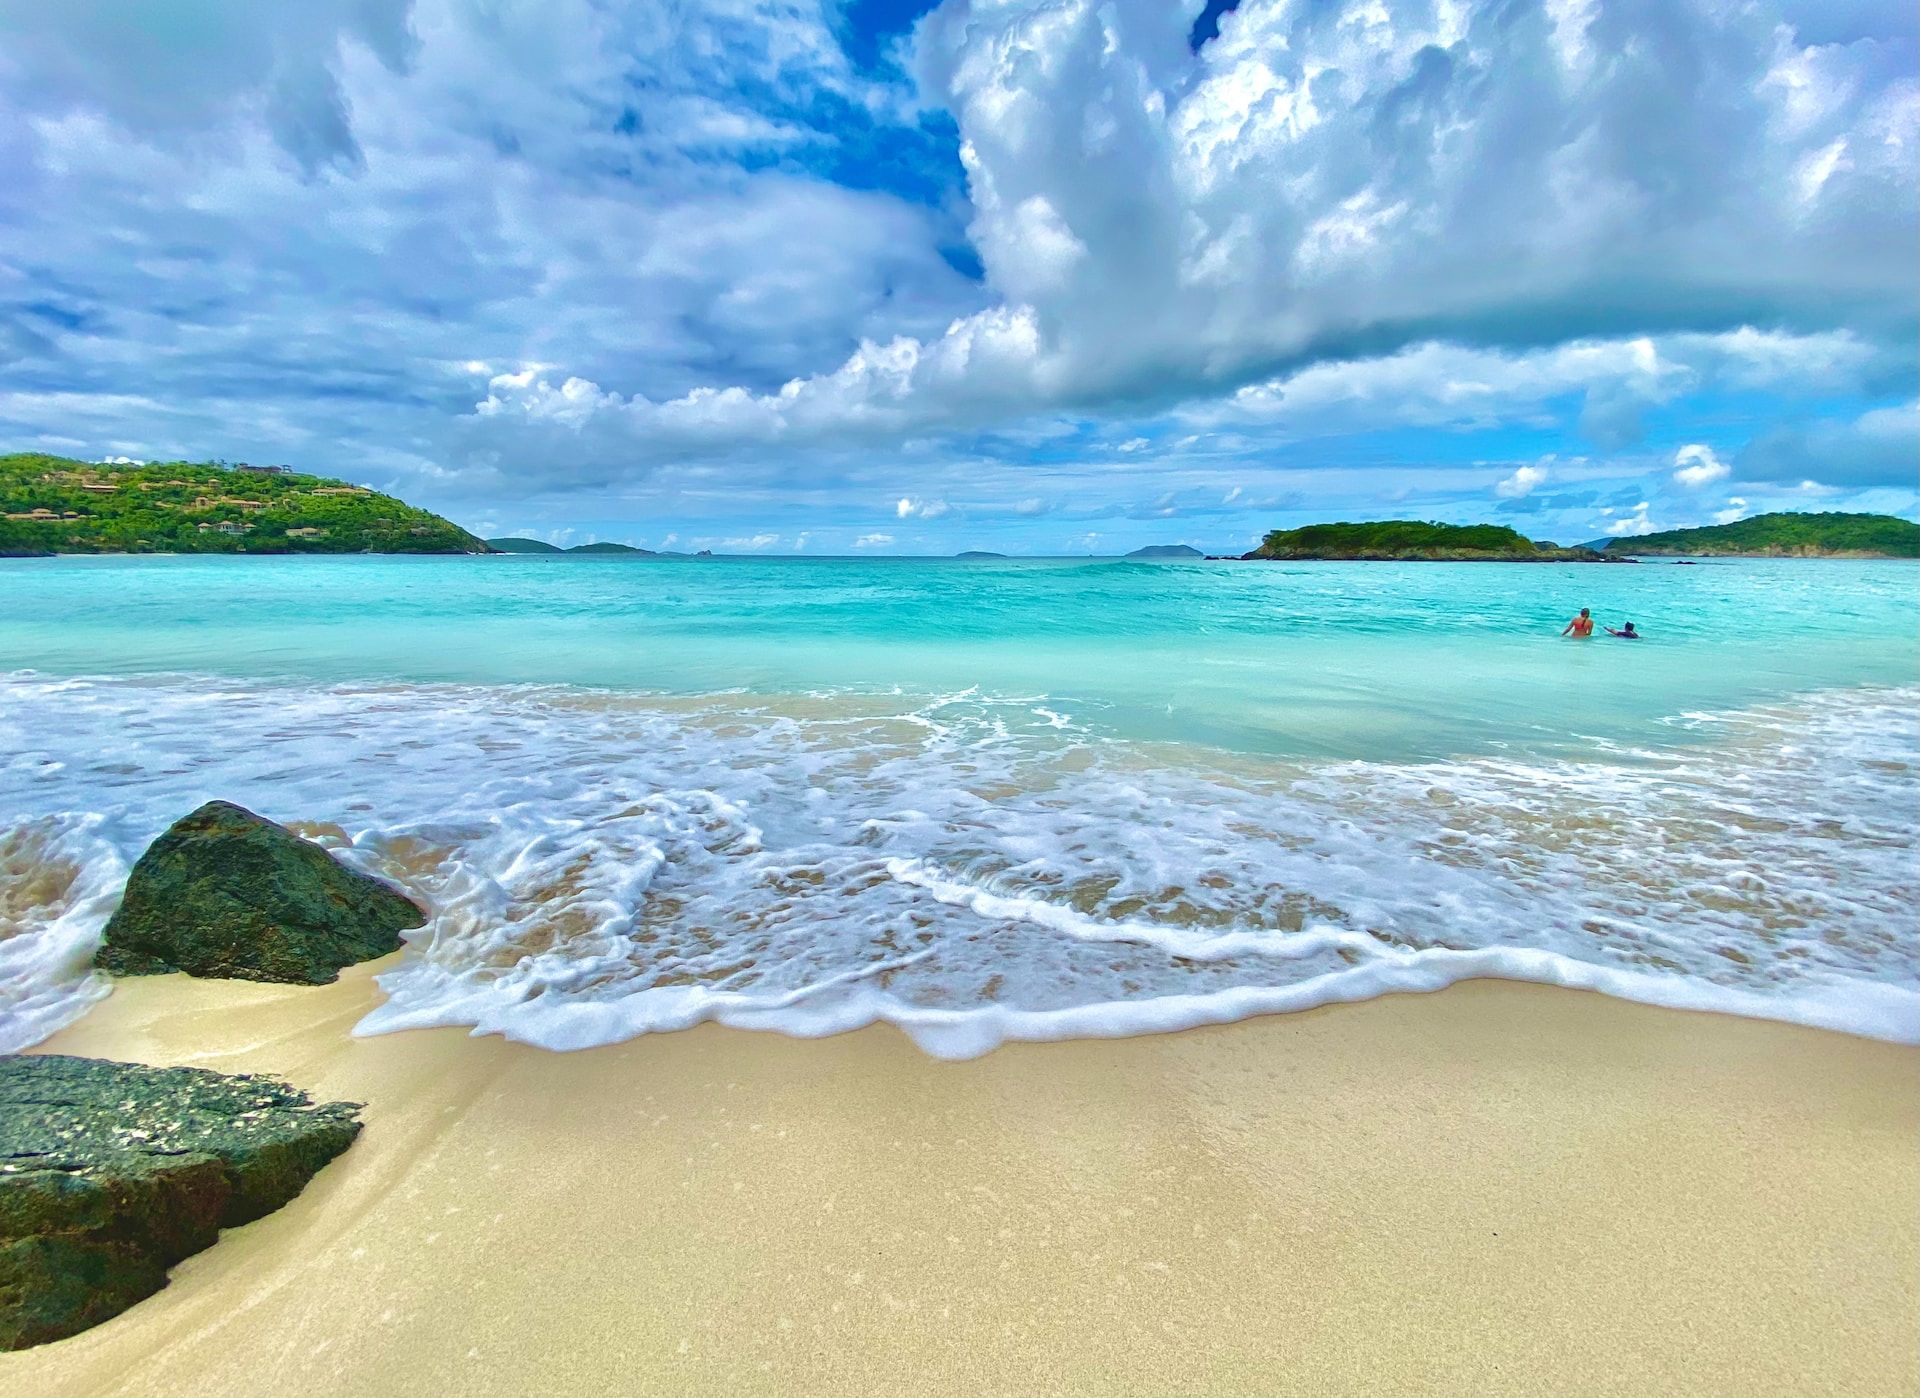 A view of Honeymoon Beach, St John, US Virgin Islands